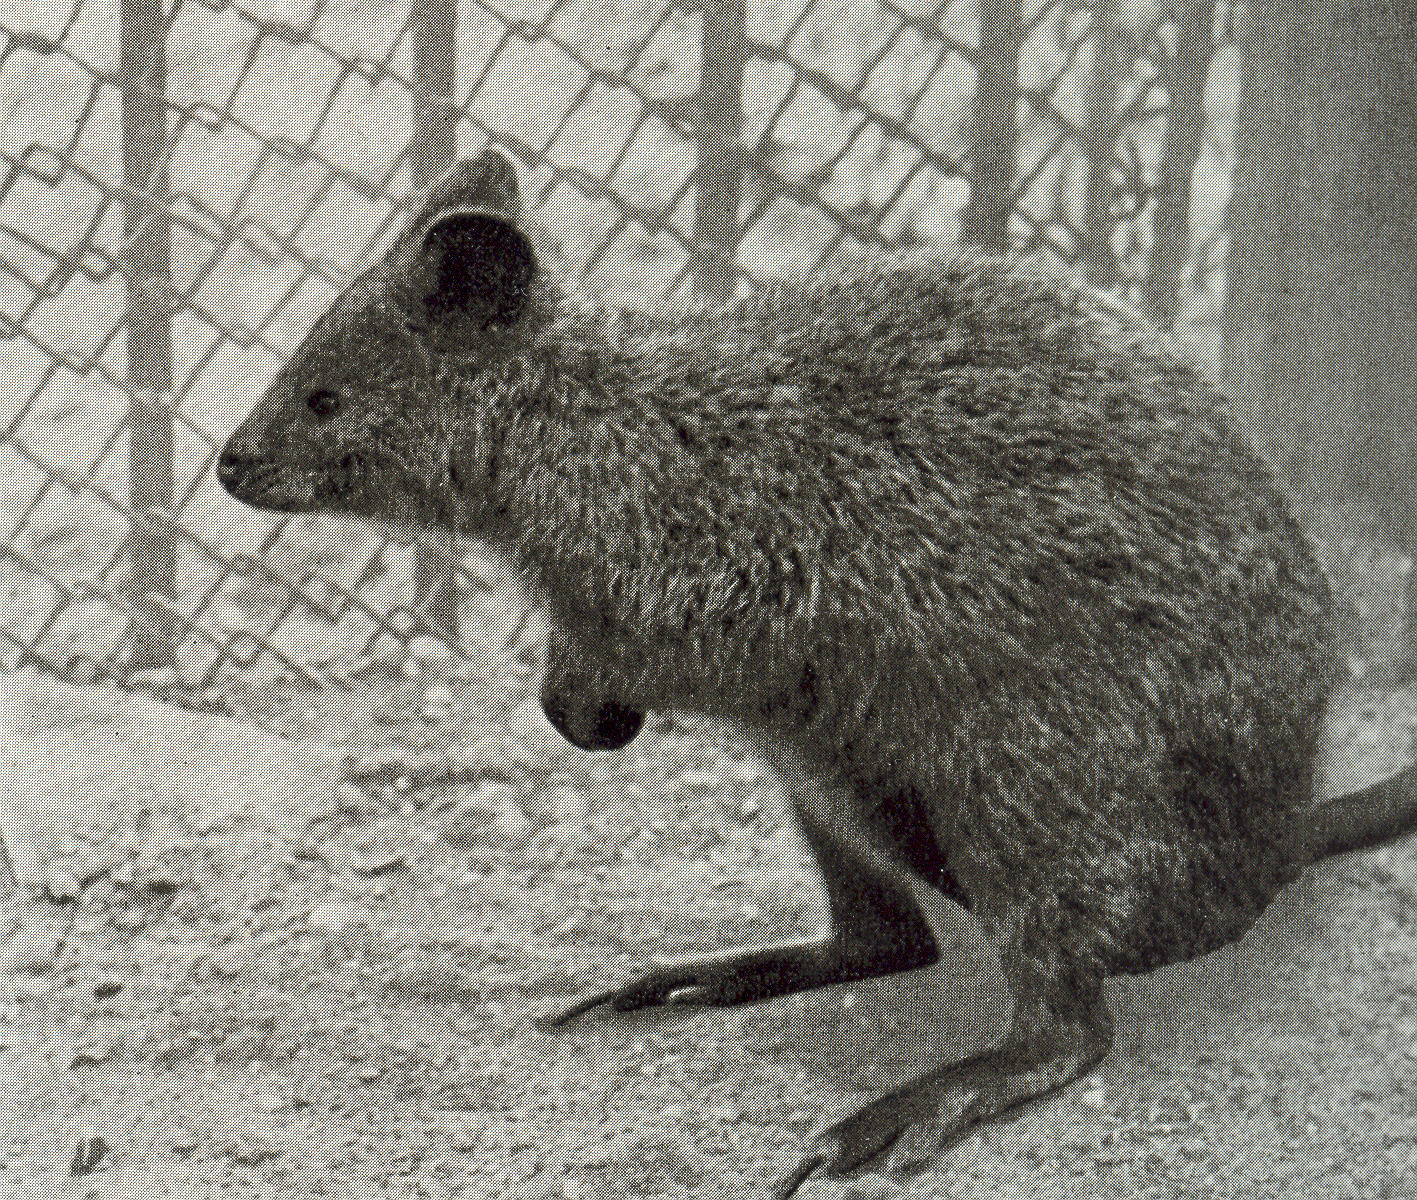 05 - Az 1958-ban érkezett kurtafarkú kenguruk egyike. A quokka néven is ismert faj napjainkban az internet sztárja, mert ábrázata szemből olyan, mintha mindig mosolyogna. Szelei László felvétele